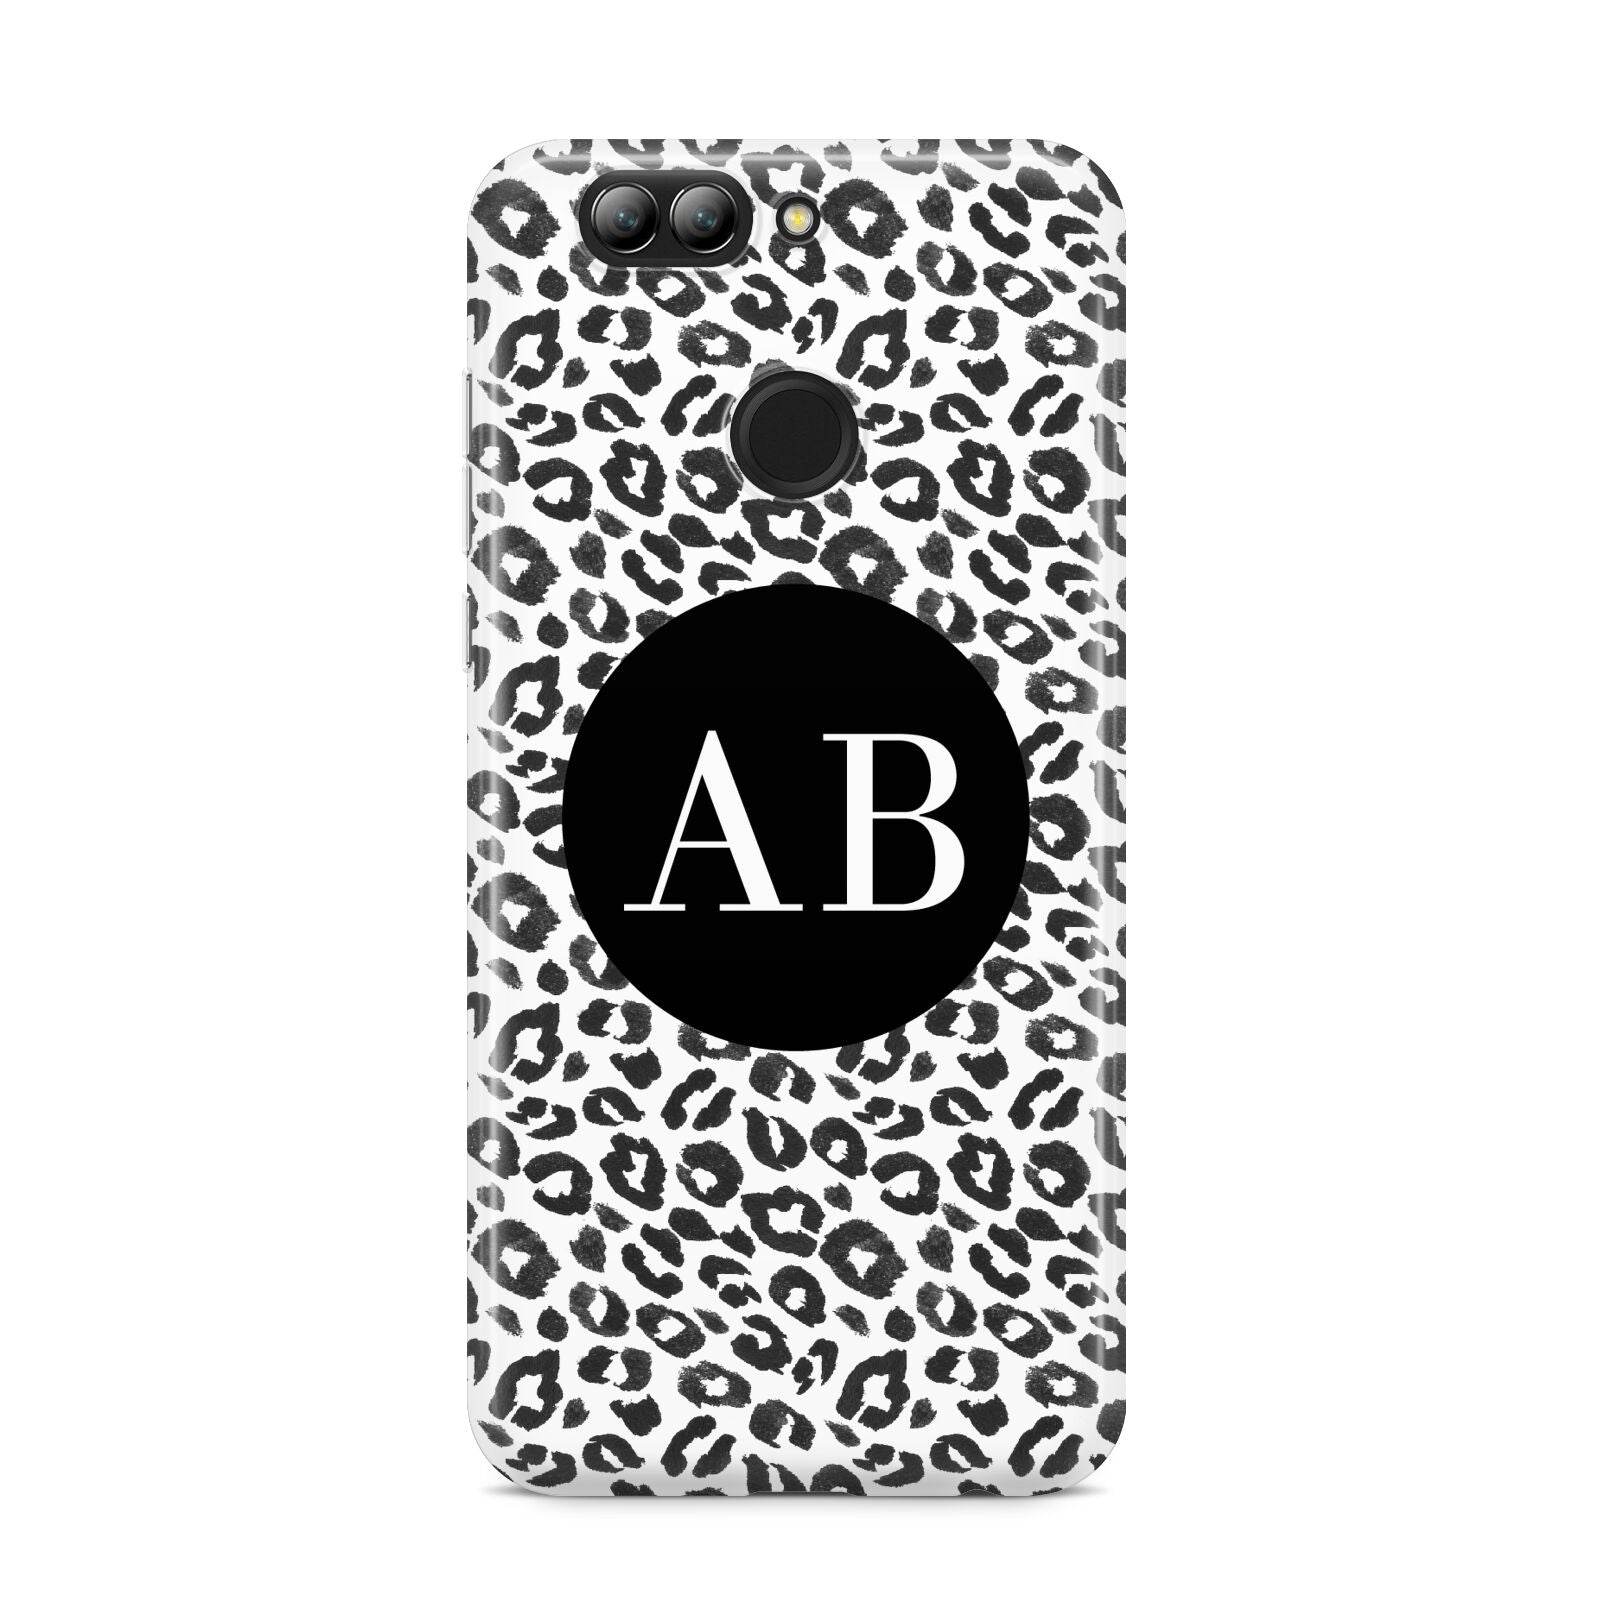 Leopard Print Black and White Huawei Nova 2s Phone Case